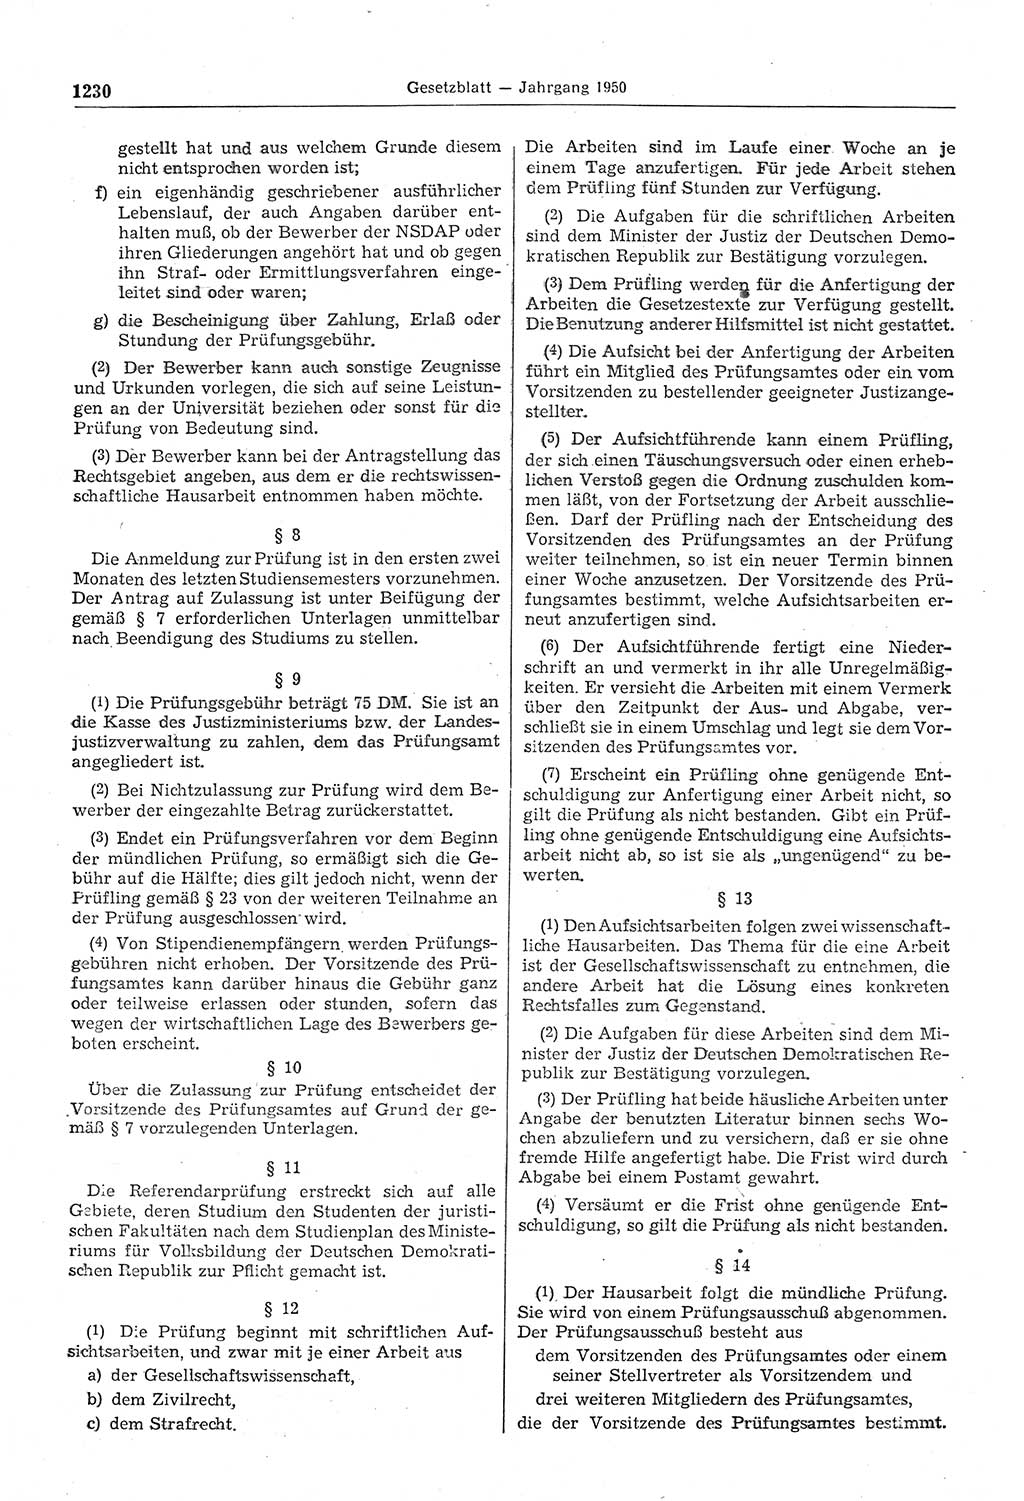 Gesetzblatt (GBl.) der Deutschen Demokratischen Republik (DDR) 1950, Seite 1230 (GBl. DDR 1950, S. 1230)